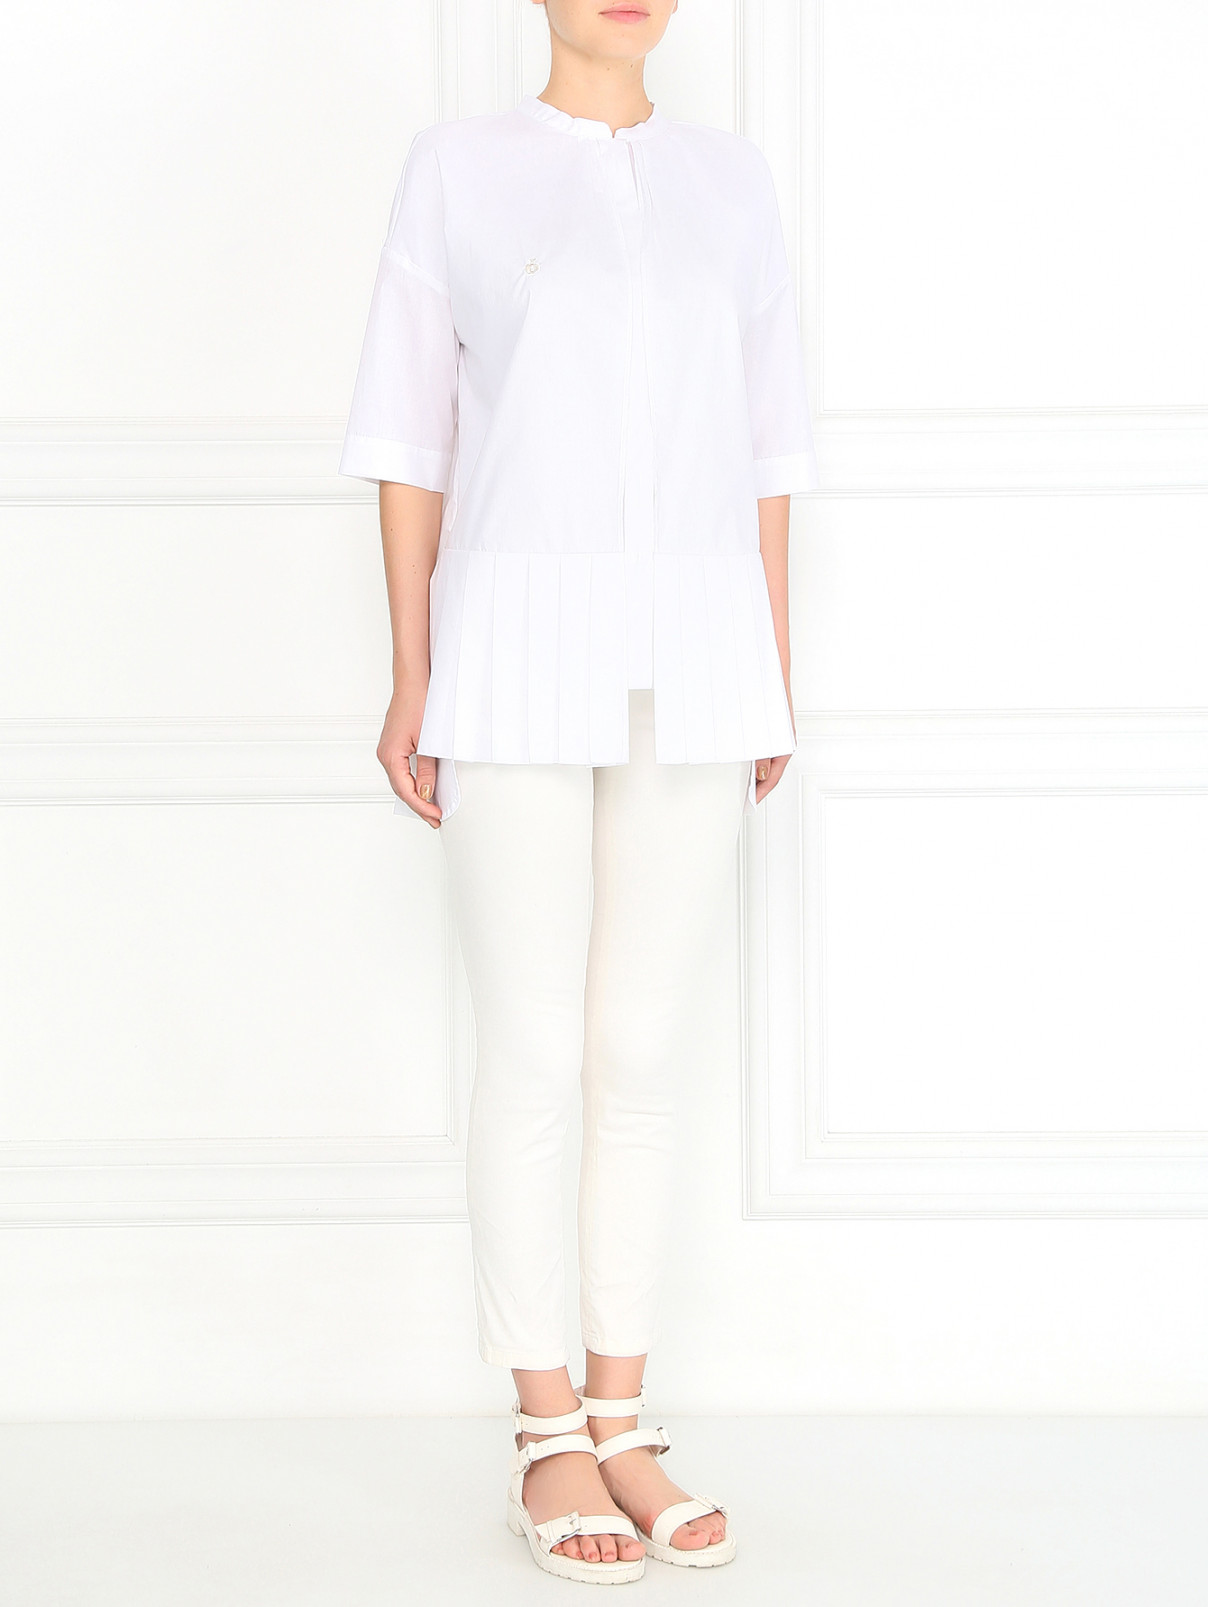 Блуза из хлопка с рукавом 3/4 BOSCO  –  Модель Общий вид  – Цвет:  Белый